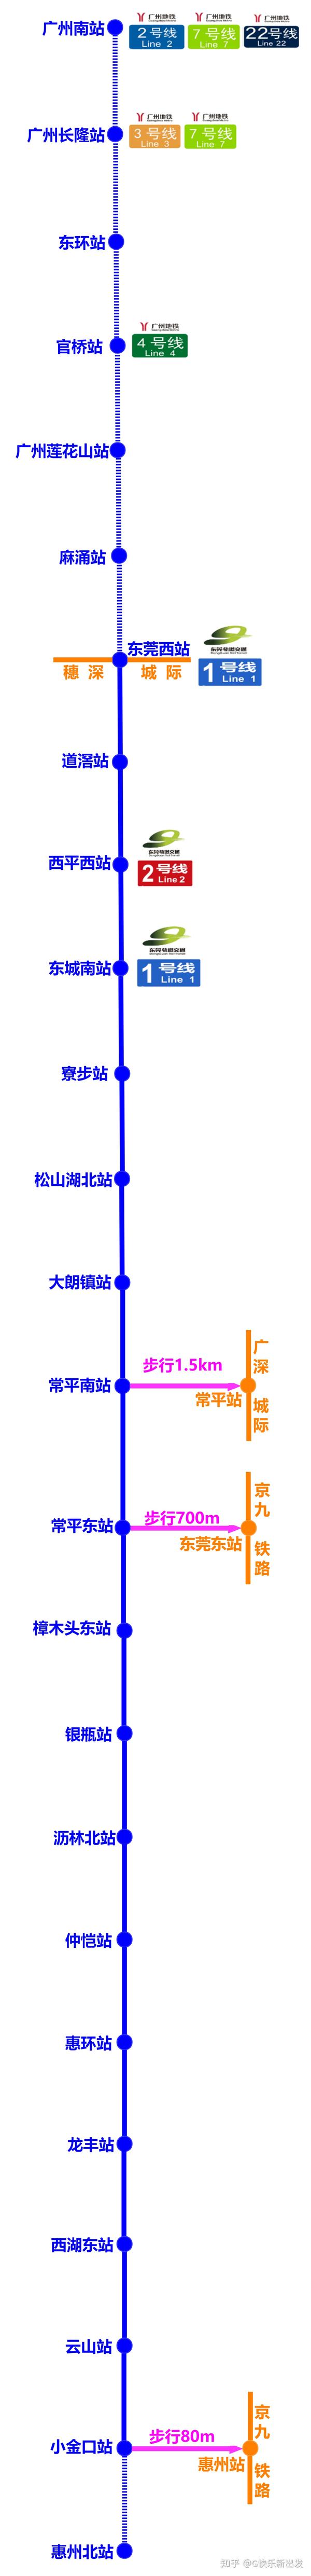 广惠城际铁路分佛莞城际铁路和莞惠城际铁路两段建设.